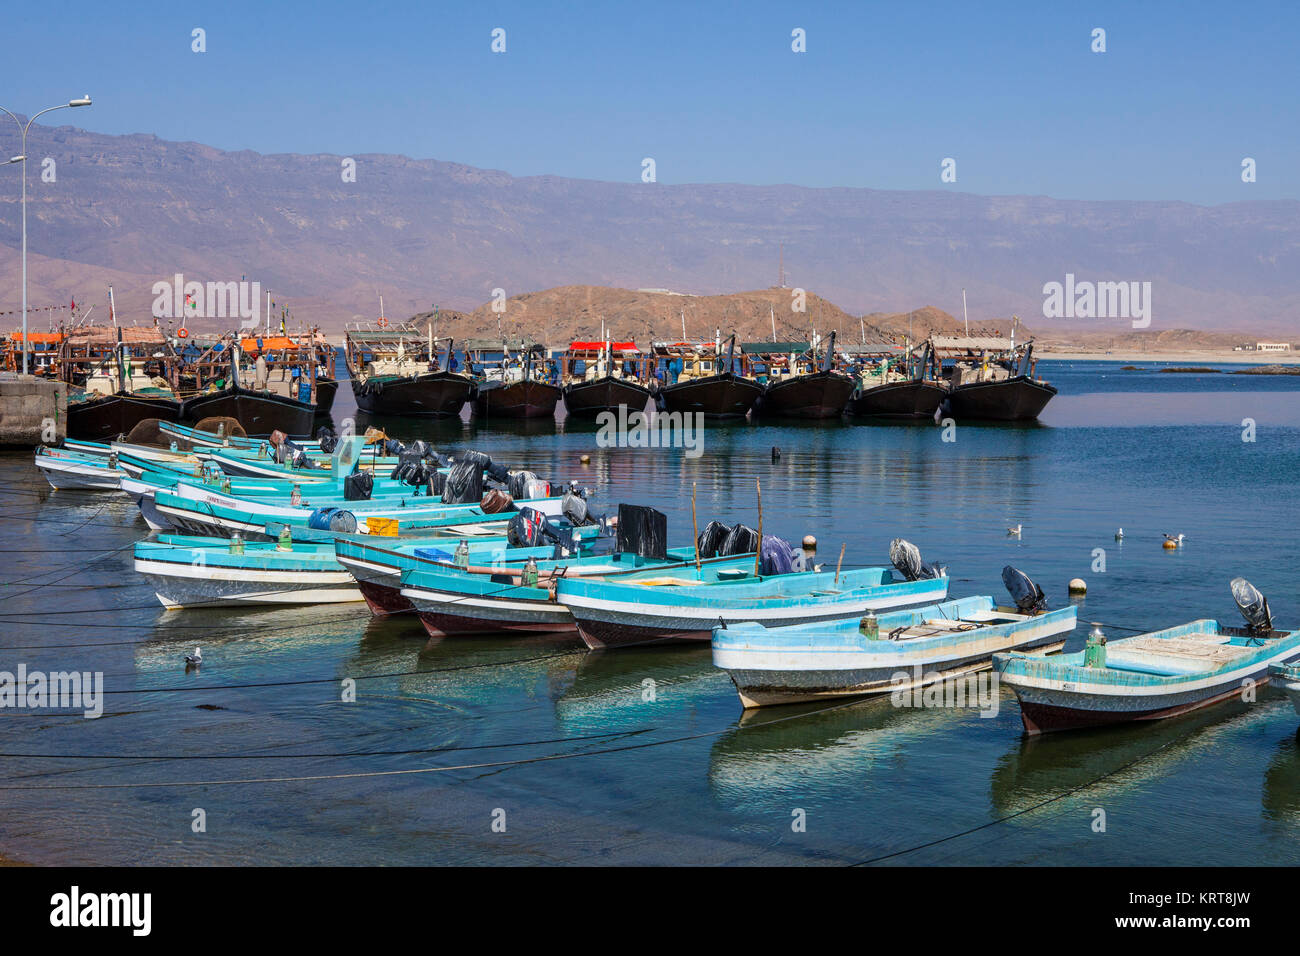 MIRBAT, Oman - gennaio 07,2016: barche da pesca (Dhow) nella porta di Mirbat. Dhofar, Oman. Foto Stock